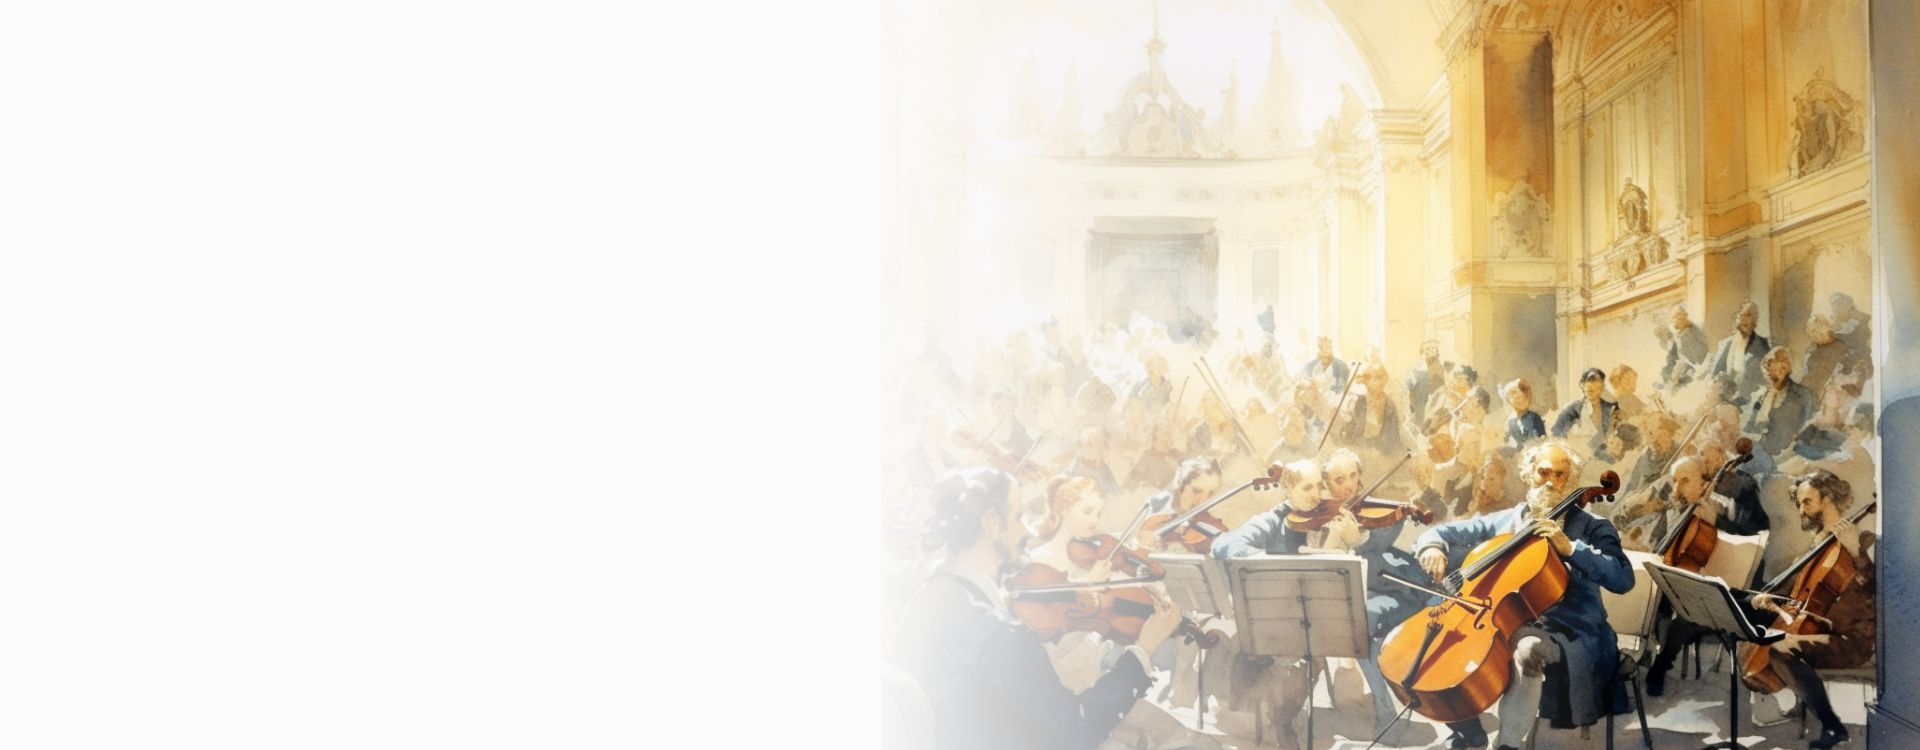 Imagen de cabecera del concierto Gran Soiree Orquestal. Muestra una orquesta en un teatro del siglo XVIII